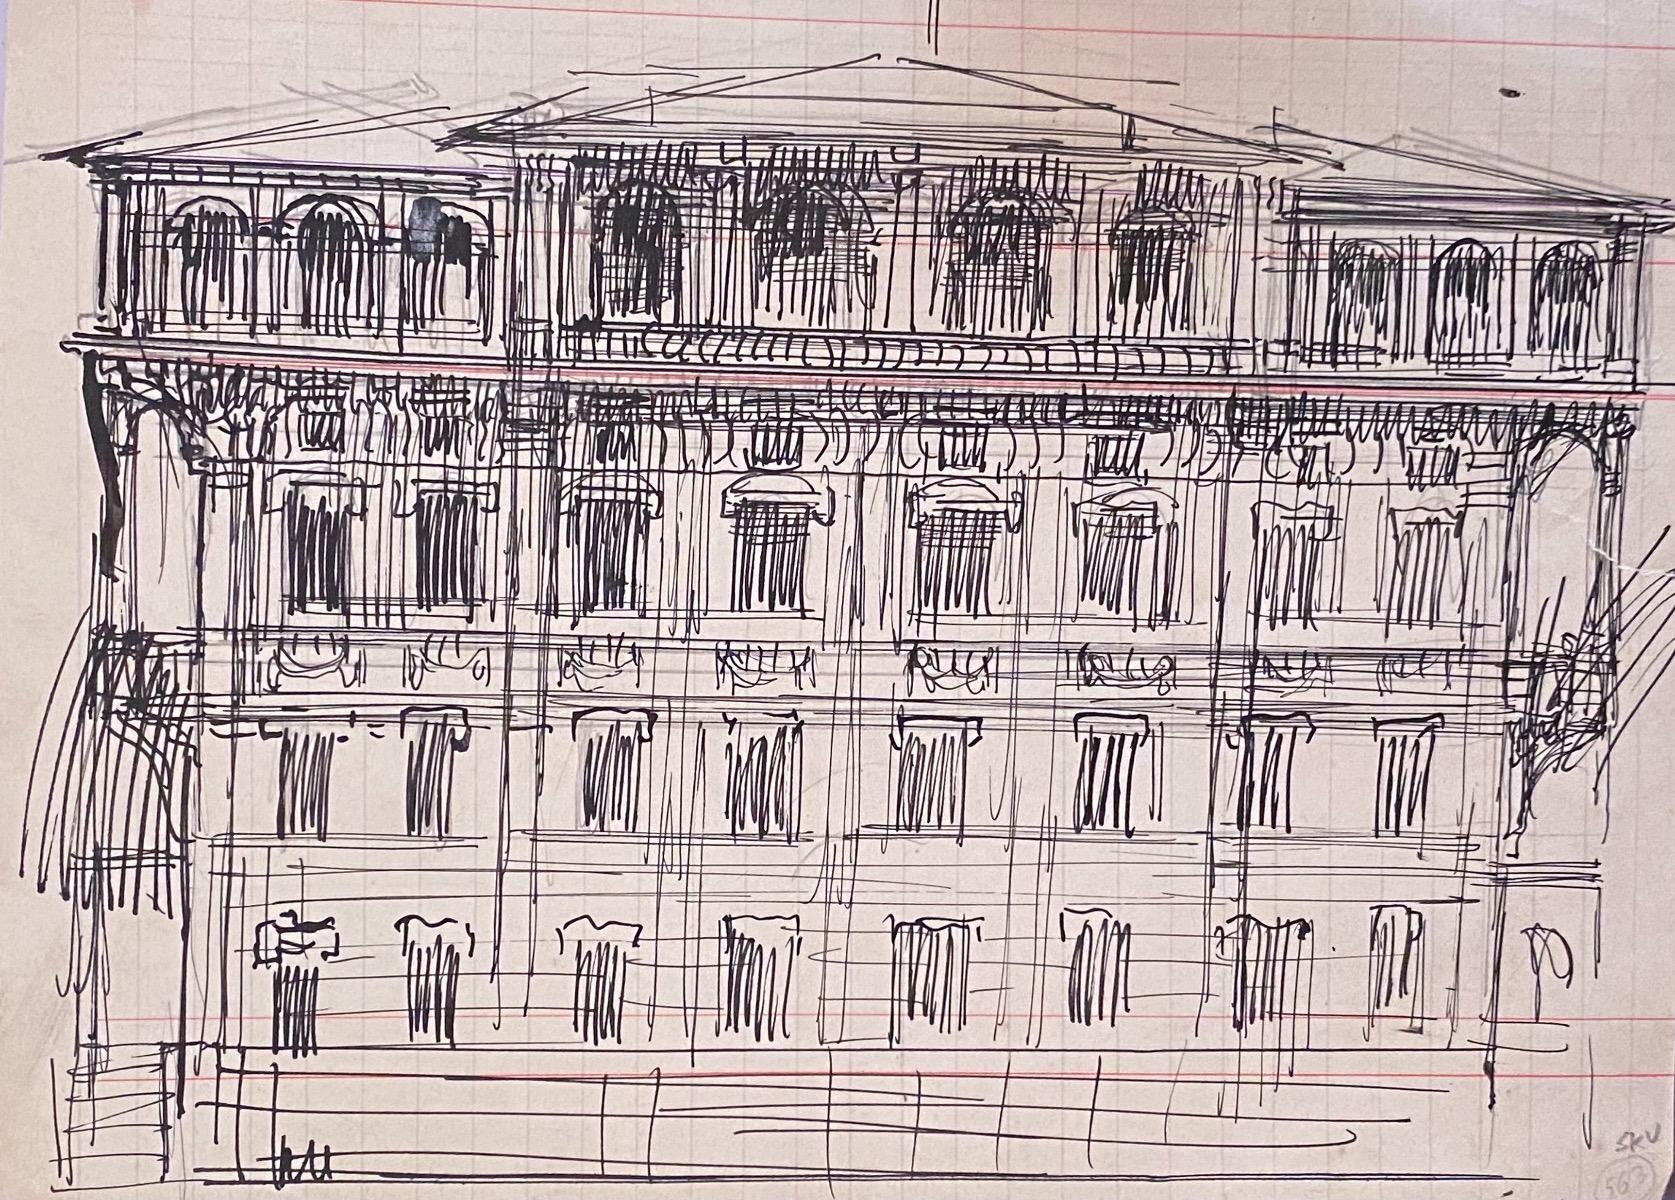 Architektur ist eine Originalzeichnung mit Stift auf cremefarbenem, kariertem Papier.  von Gabriele Galantara (1865-1937) in den 1910er Jahren.

In gutem Zustand.

Es handelt sich um eine Originalzeichnung, auf der ein architektonisches Bauwerk